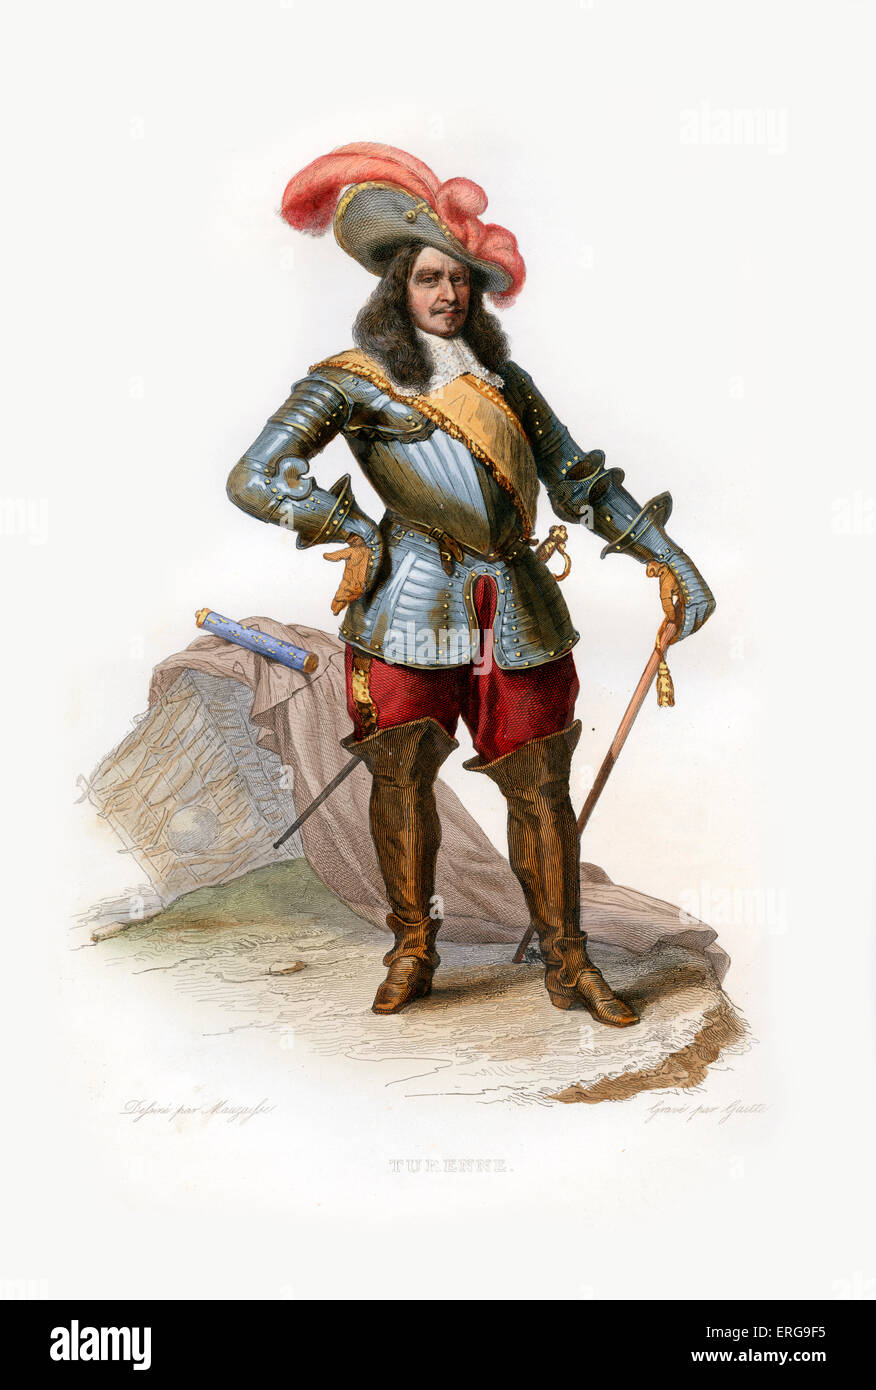 Henri de la Tour d'Auvergne, Vicomte de Turenne. Nobile francese che hanno raggiunto la fama militare e divenne maresciallo di Francia. Foto Stock